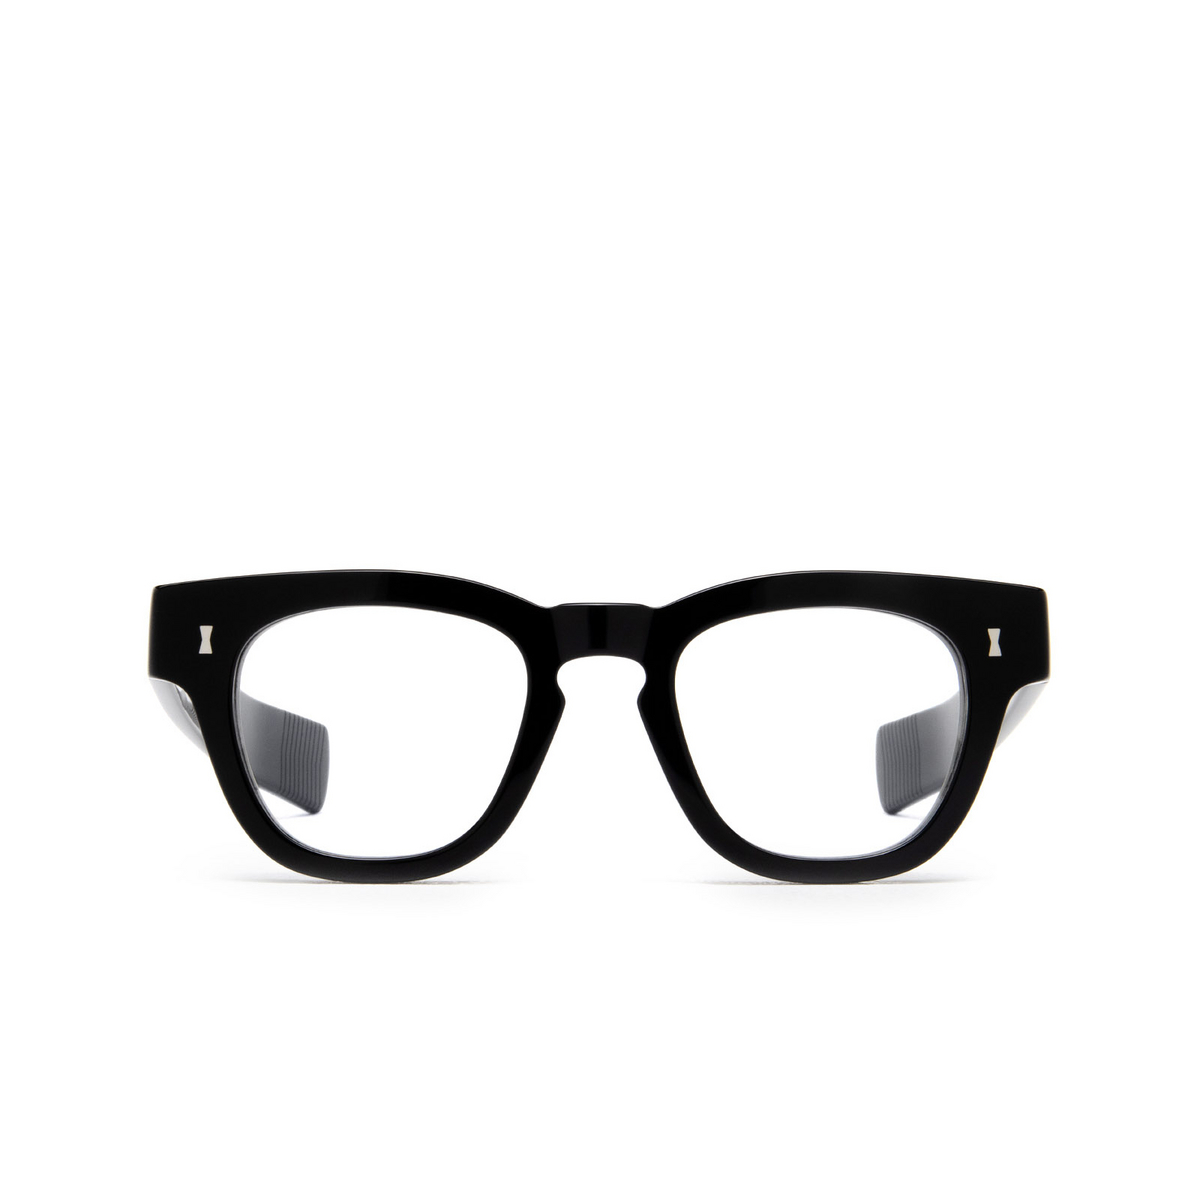 Cubitts CRUIKSHANK Eyeglasses CRU-R-BLA Black - front view